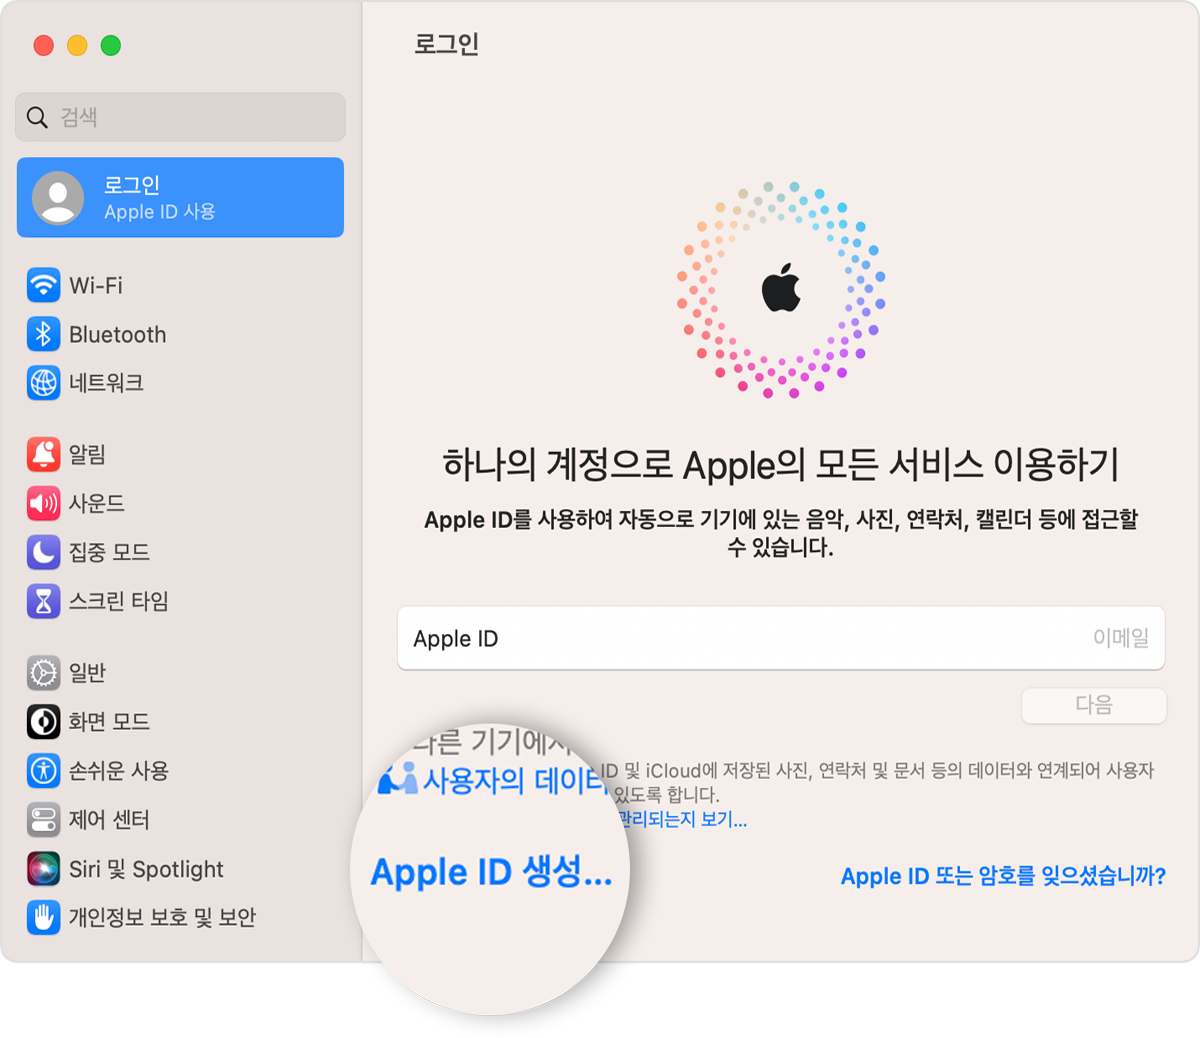 클릭할 수 있는 Apple ID 생성 링크가 표시된 Mac 화면